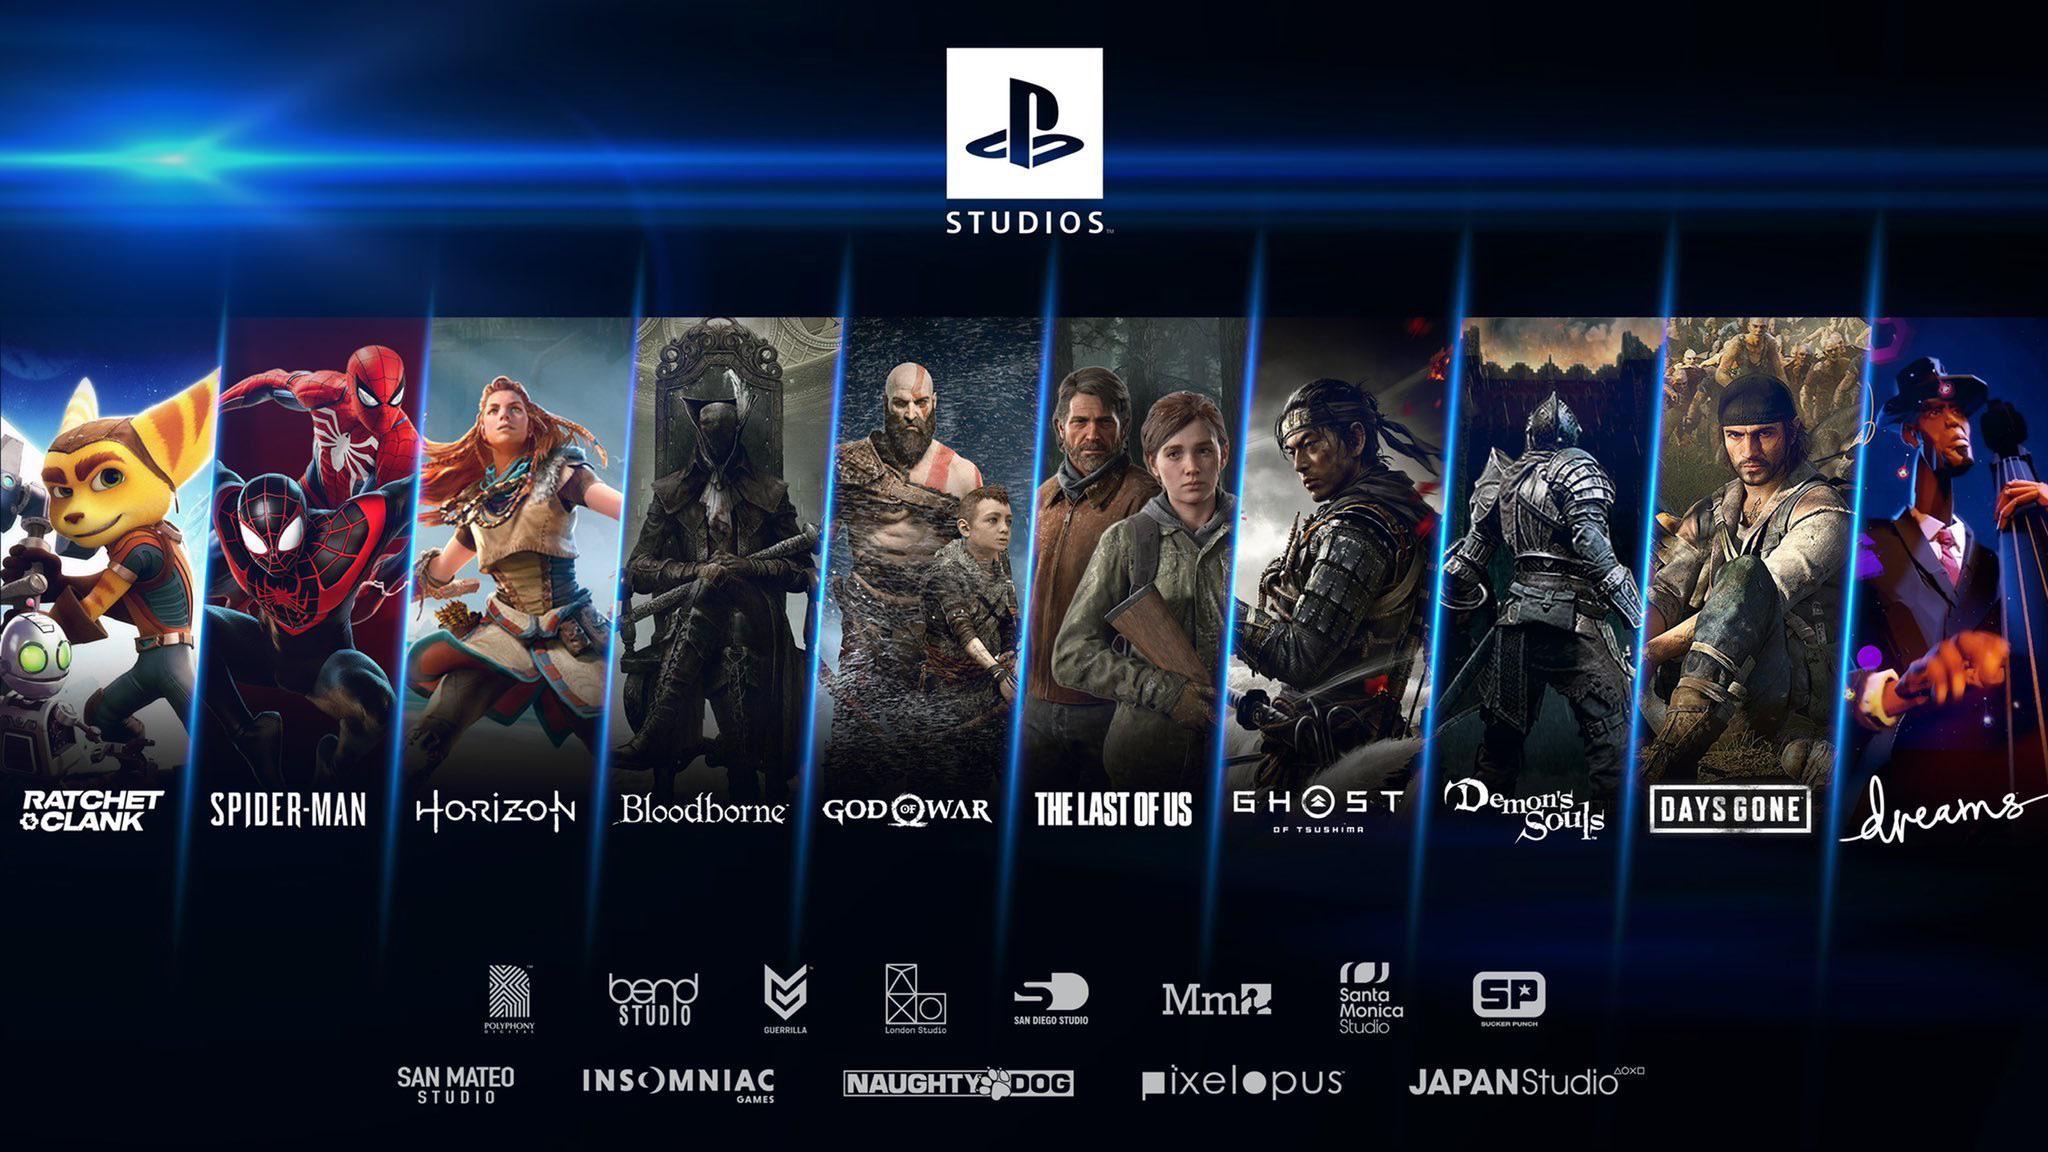 Will Sony's exclusive game portfolio lack genre diversity even more